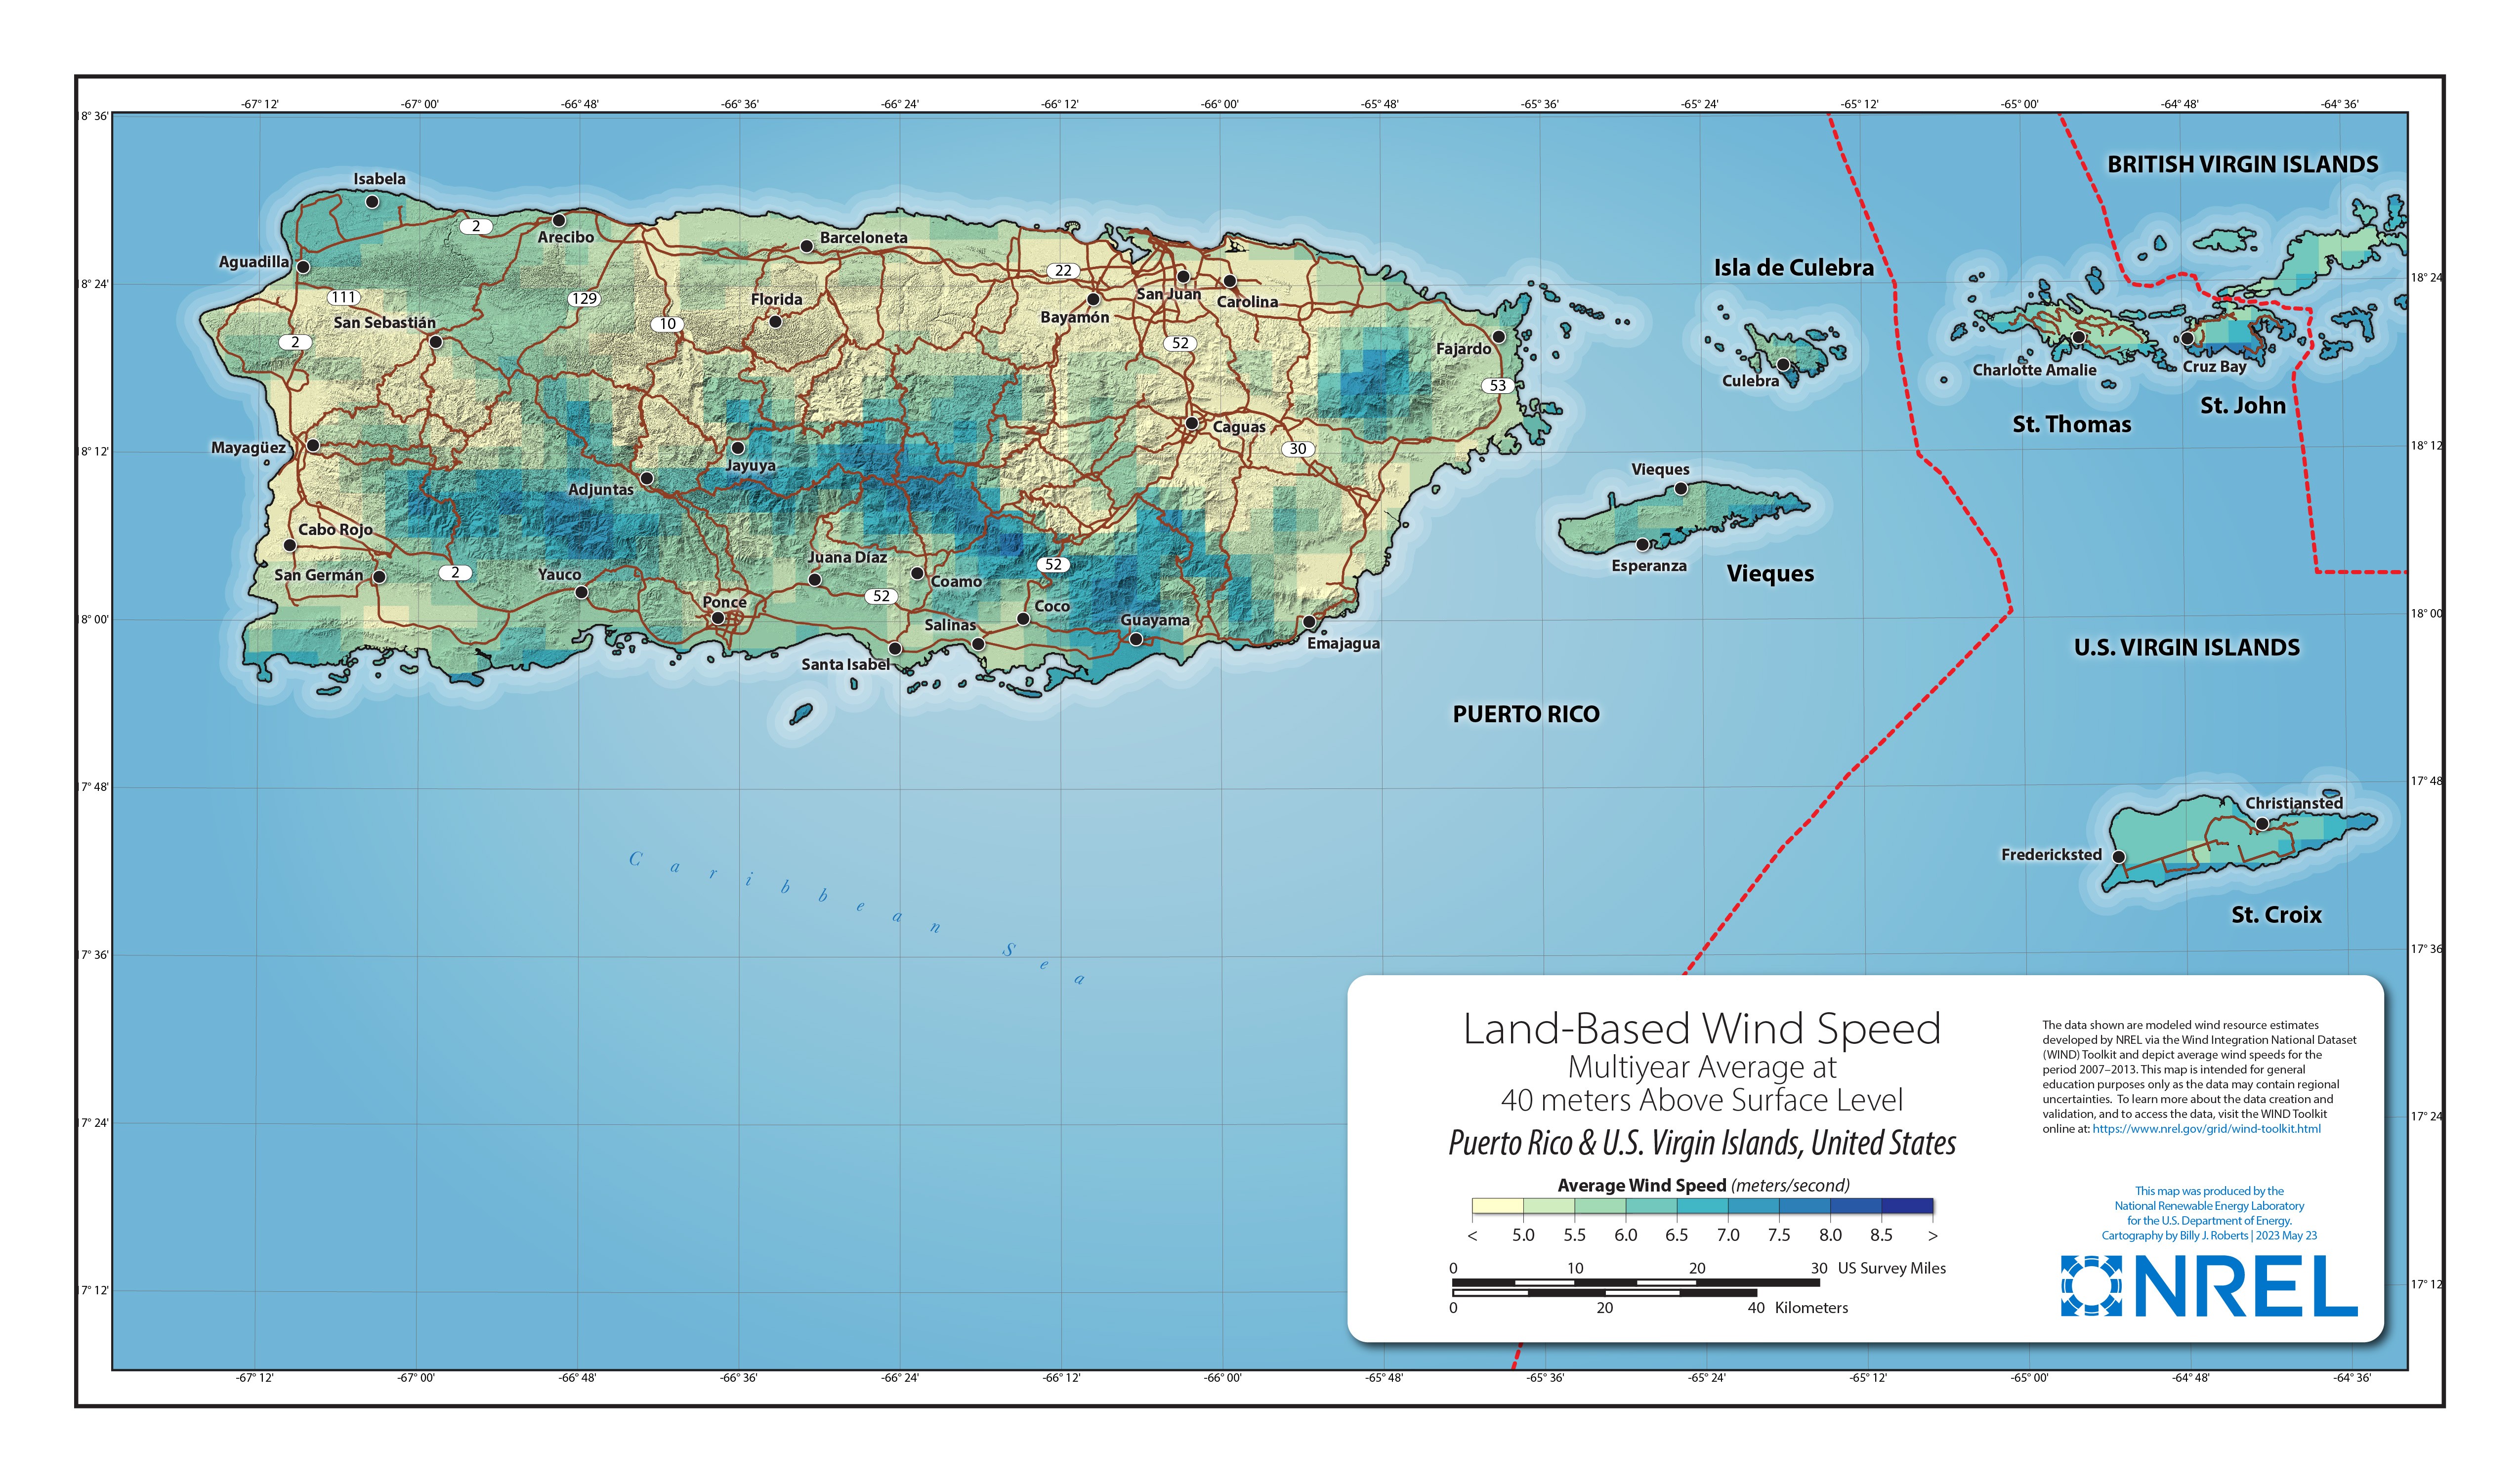 Puerto Rico-U.S. Virgin Islands Land-Based Wind Speed at 40 Meters